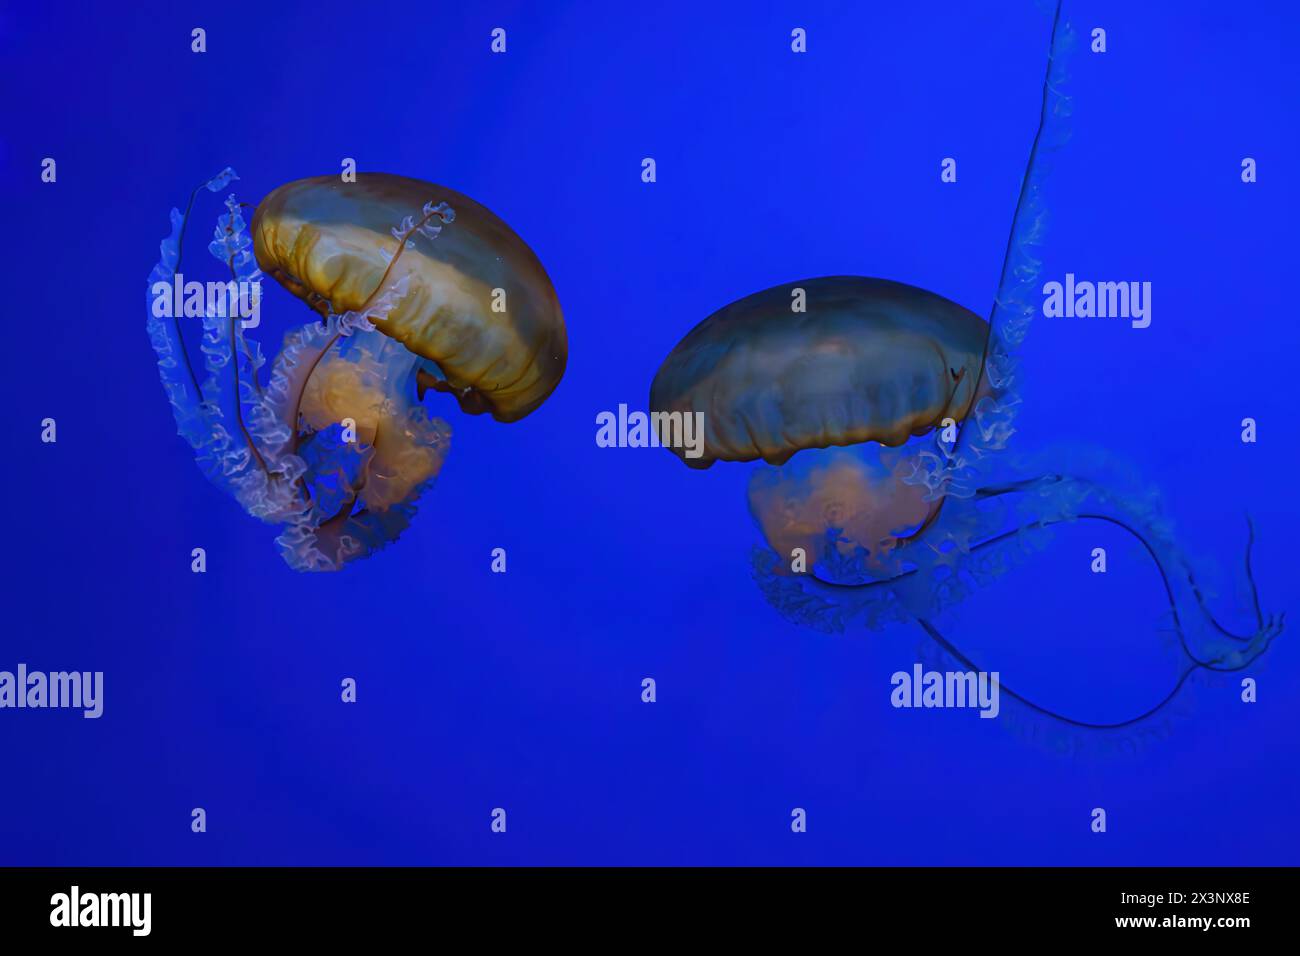 Ortie de mer du Pacifique, méduse orange ou Chrysaora fuscescens nageant dans l'eau bleue du réservoir d'aquarium. Organisme aquatique, animal, vie sous-marine, biodiversité Banque D'Images